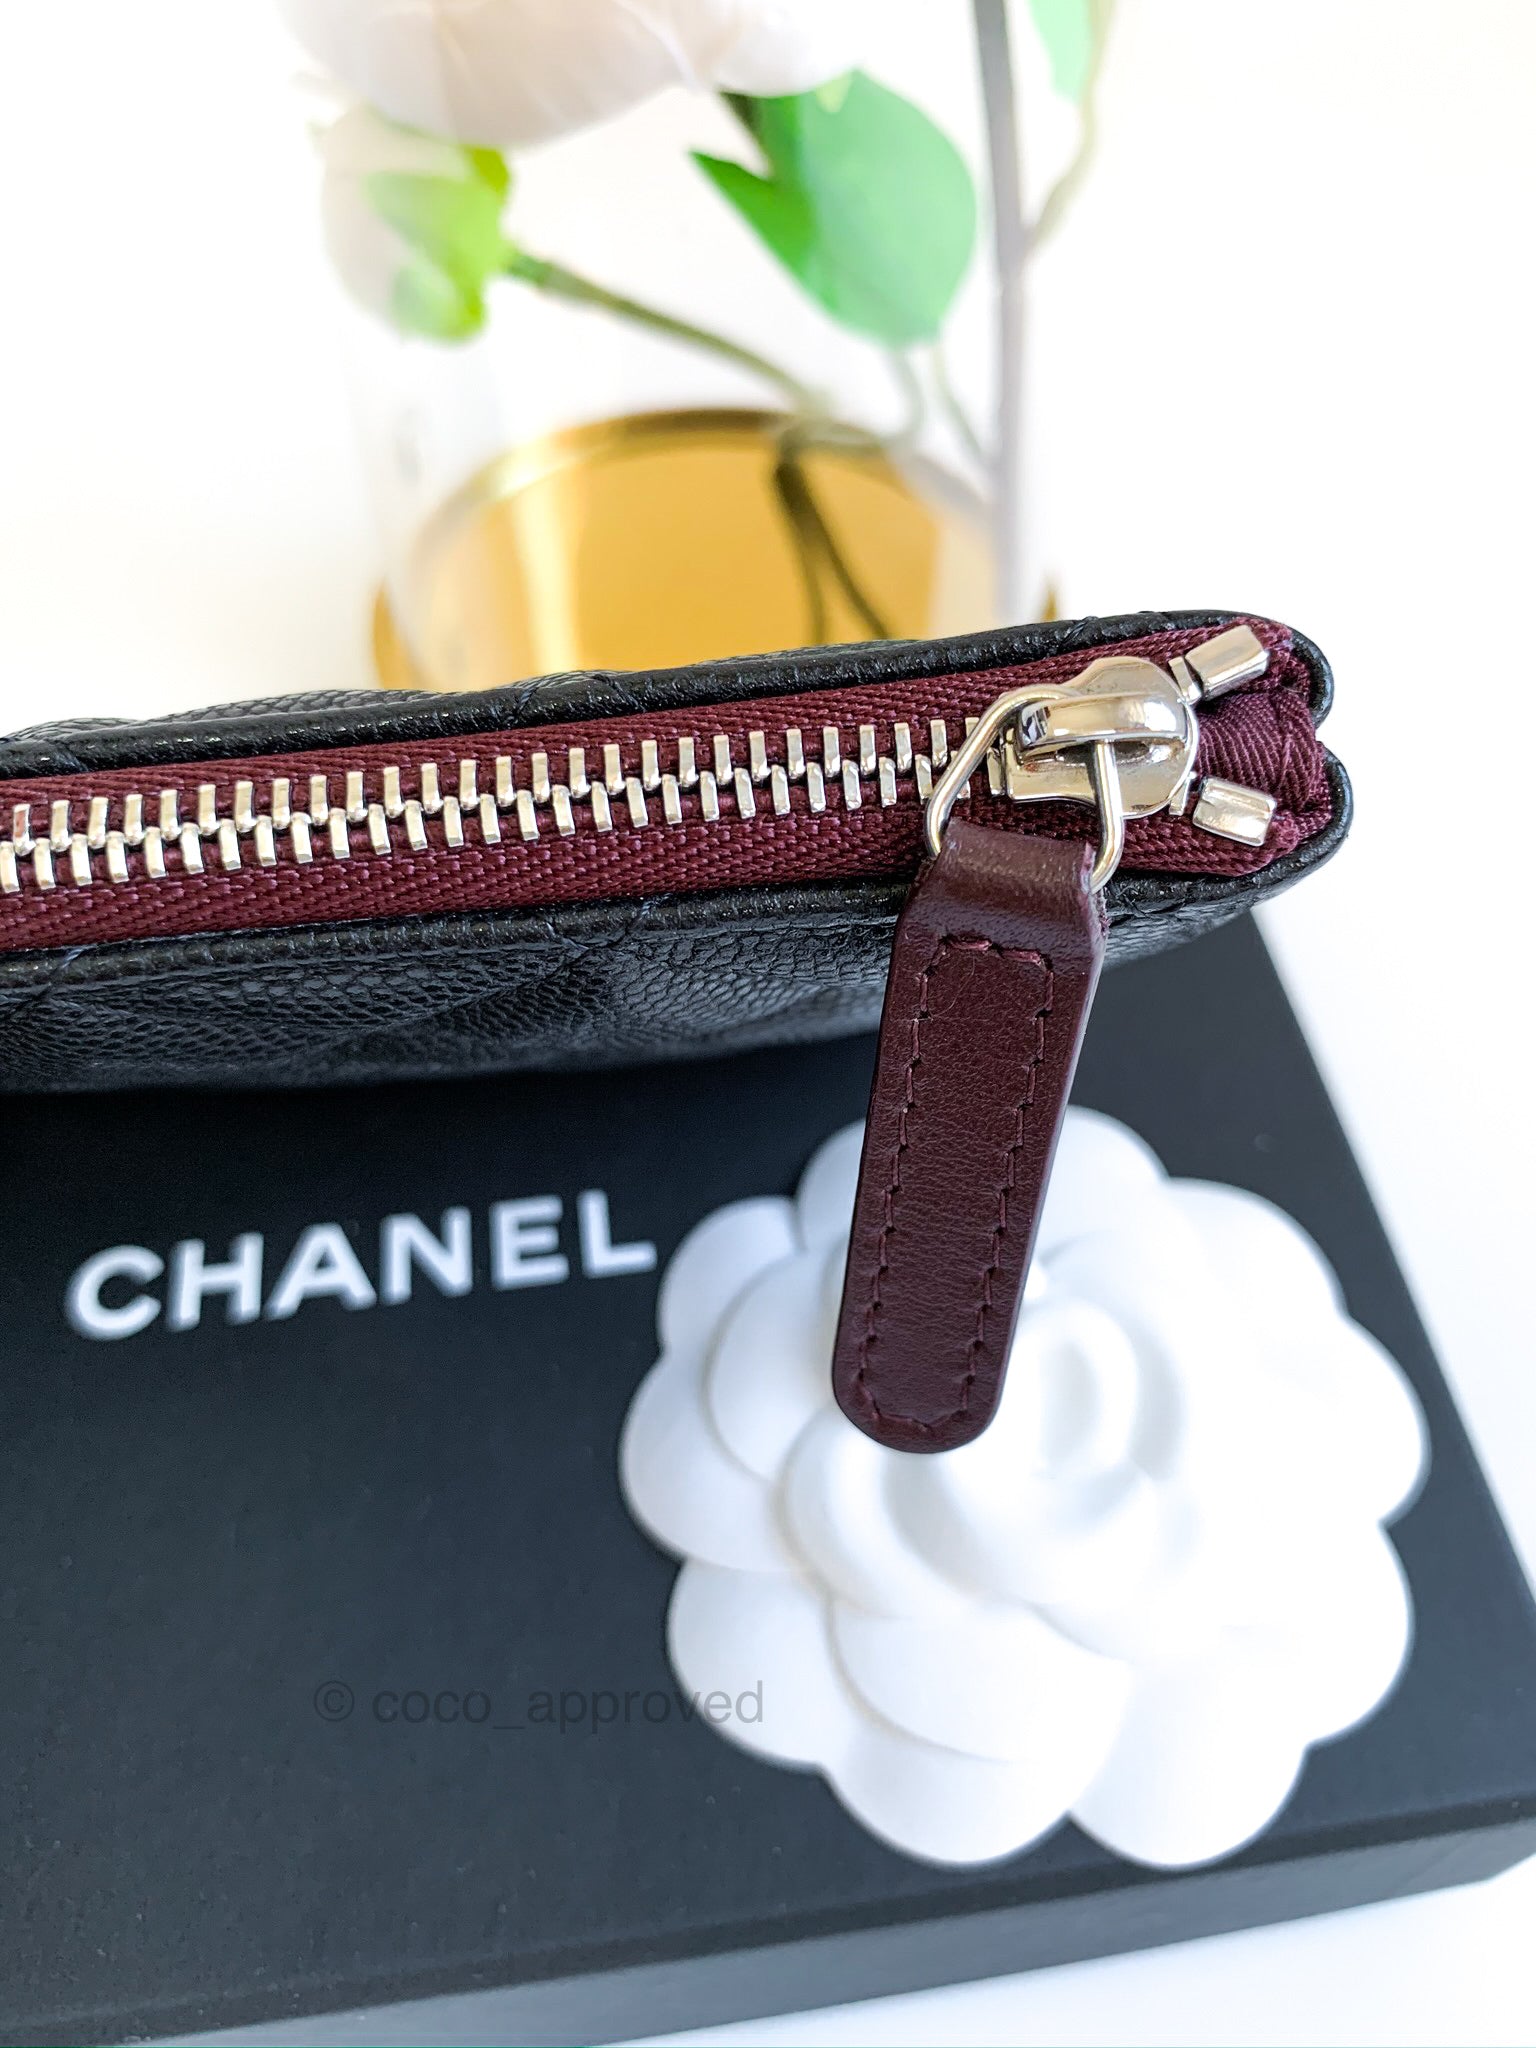 Chanel Quilted Mini O Case Black Caviar Silver Hardware – Coco